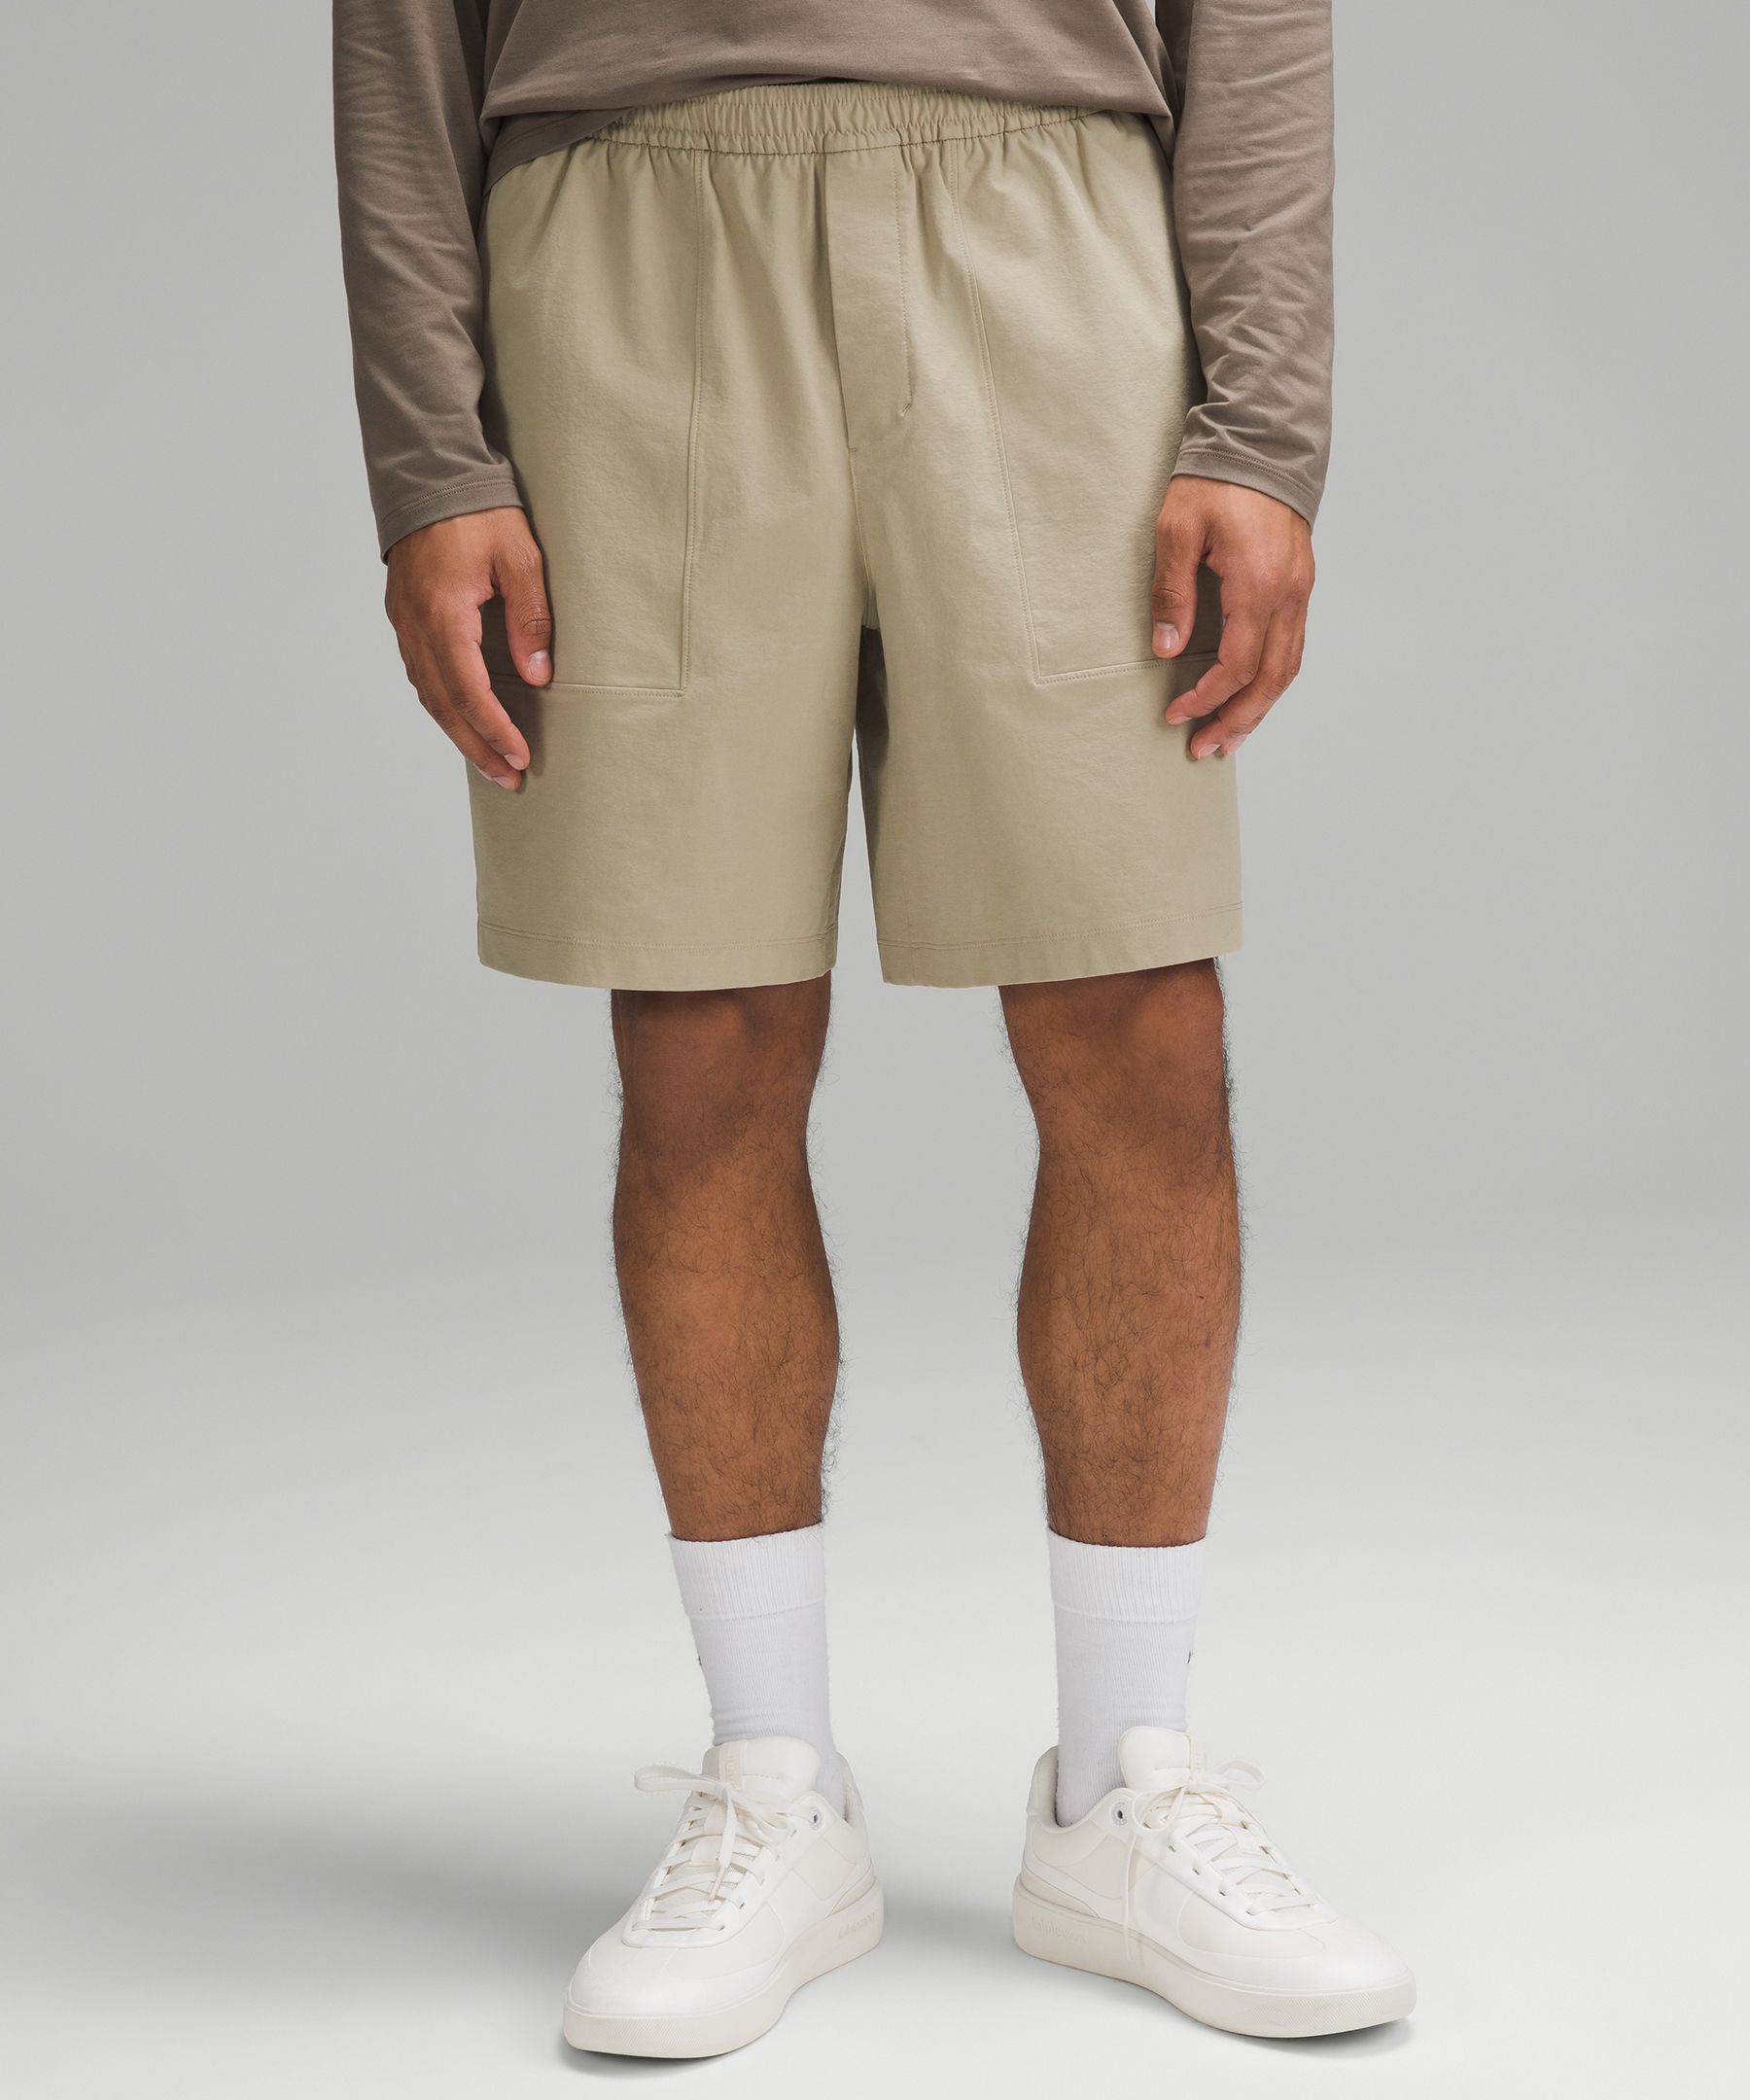 Lululemon Bowline Shorts 8" Stretch Cotton Versatwill In Neutral